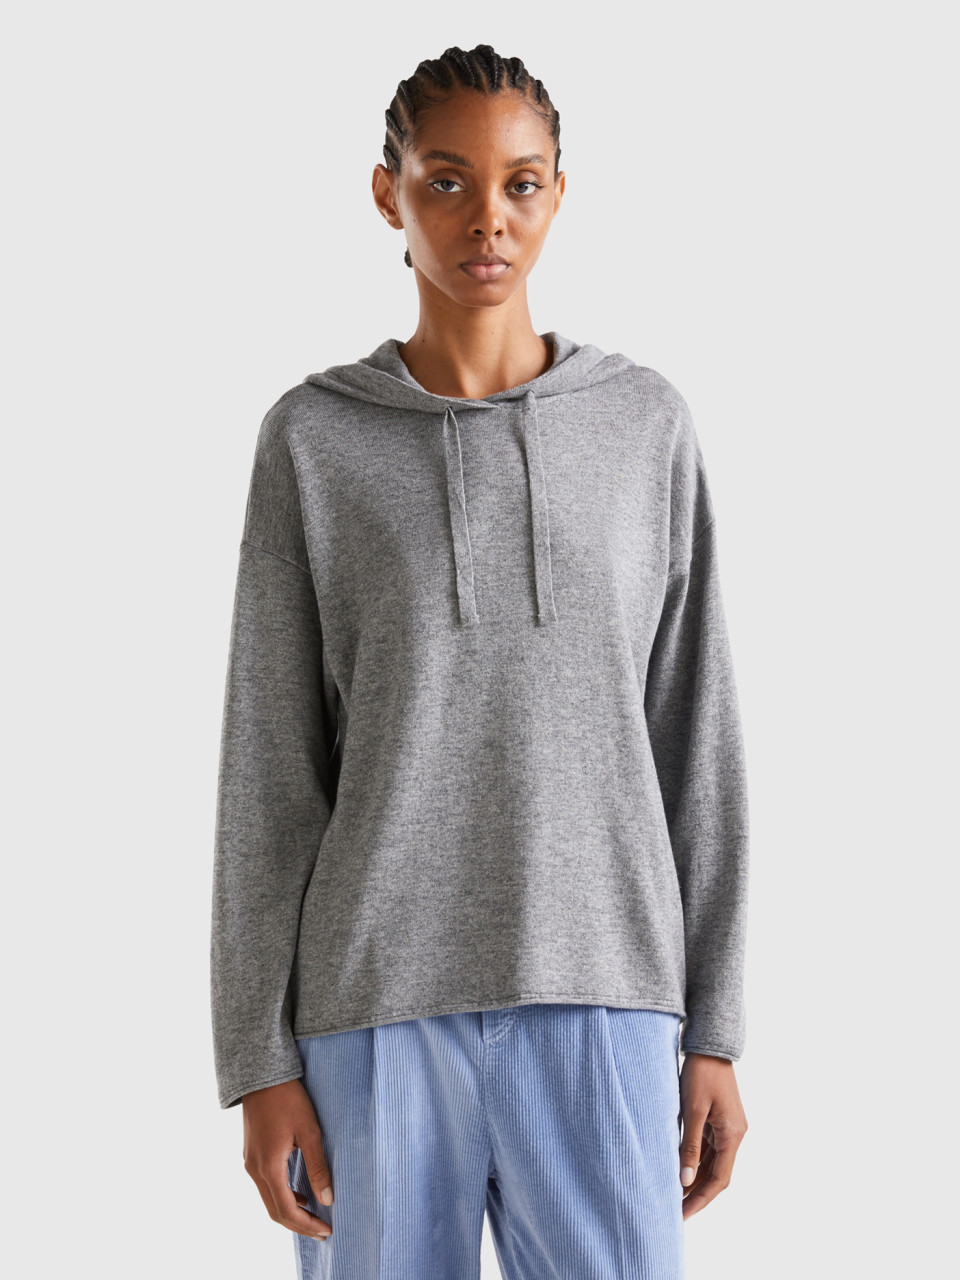 Benetton, Light Gray Cashmere Blend Sweater With Hood, Light Gray, Women